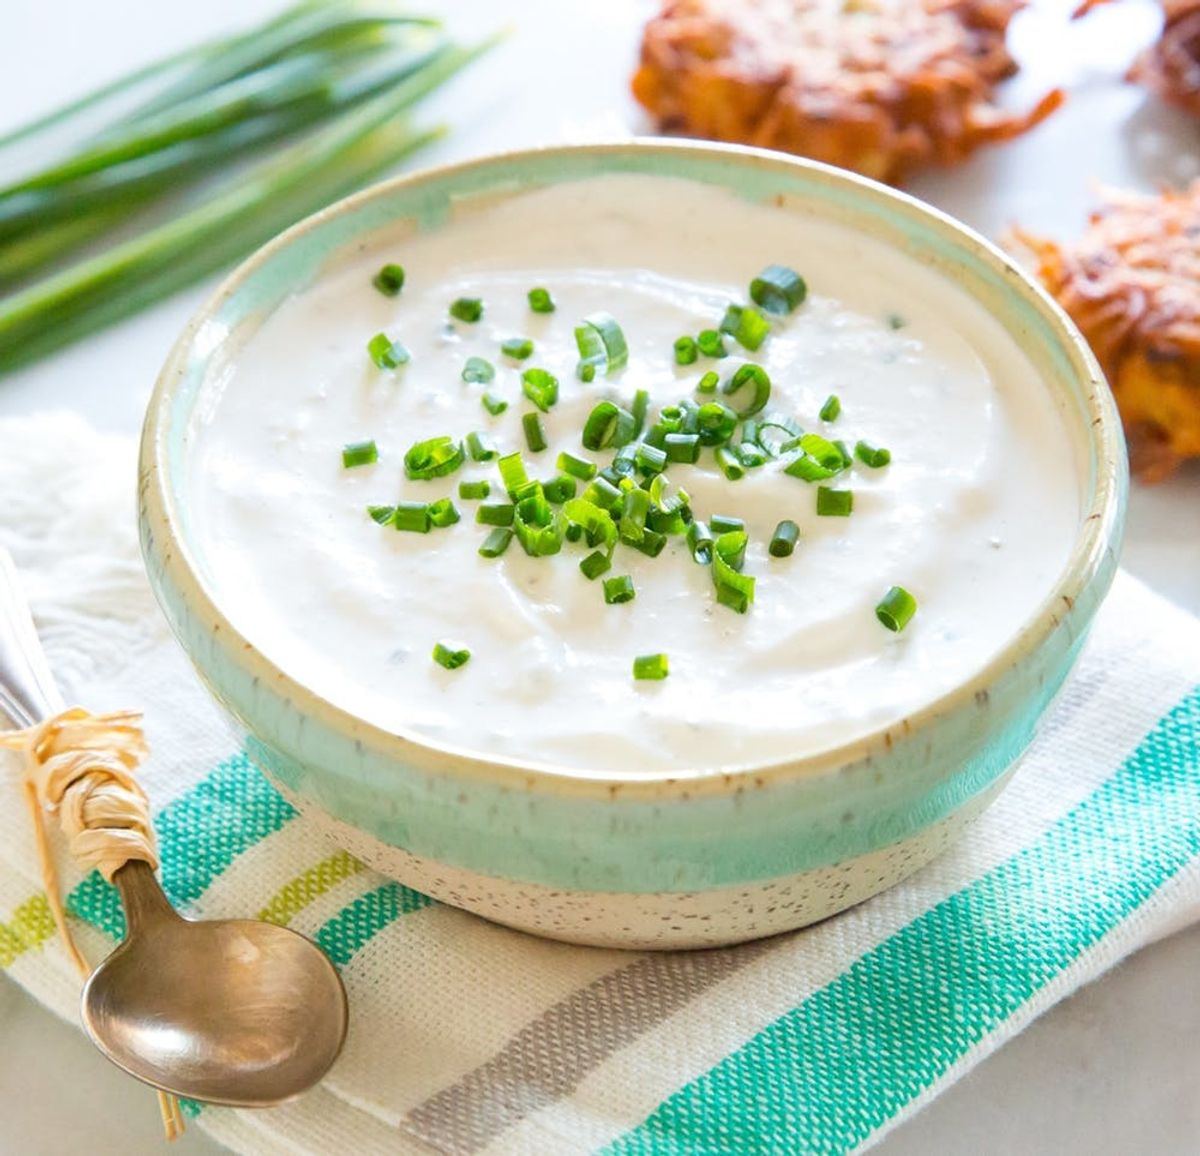 5 Ingredient Horseradish Sour Cream Dip Recipe for Your Latkes